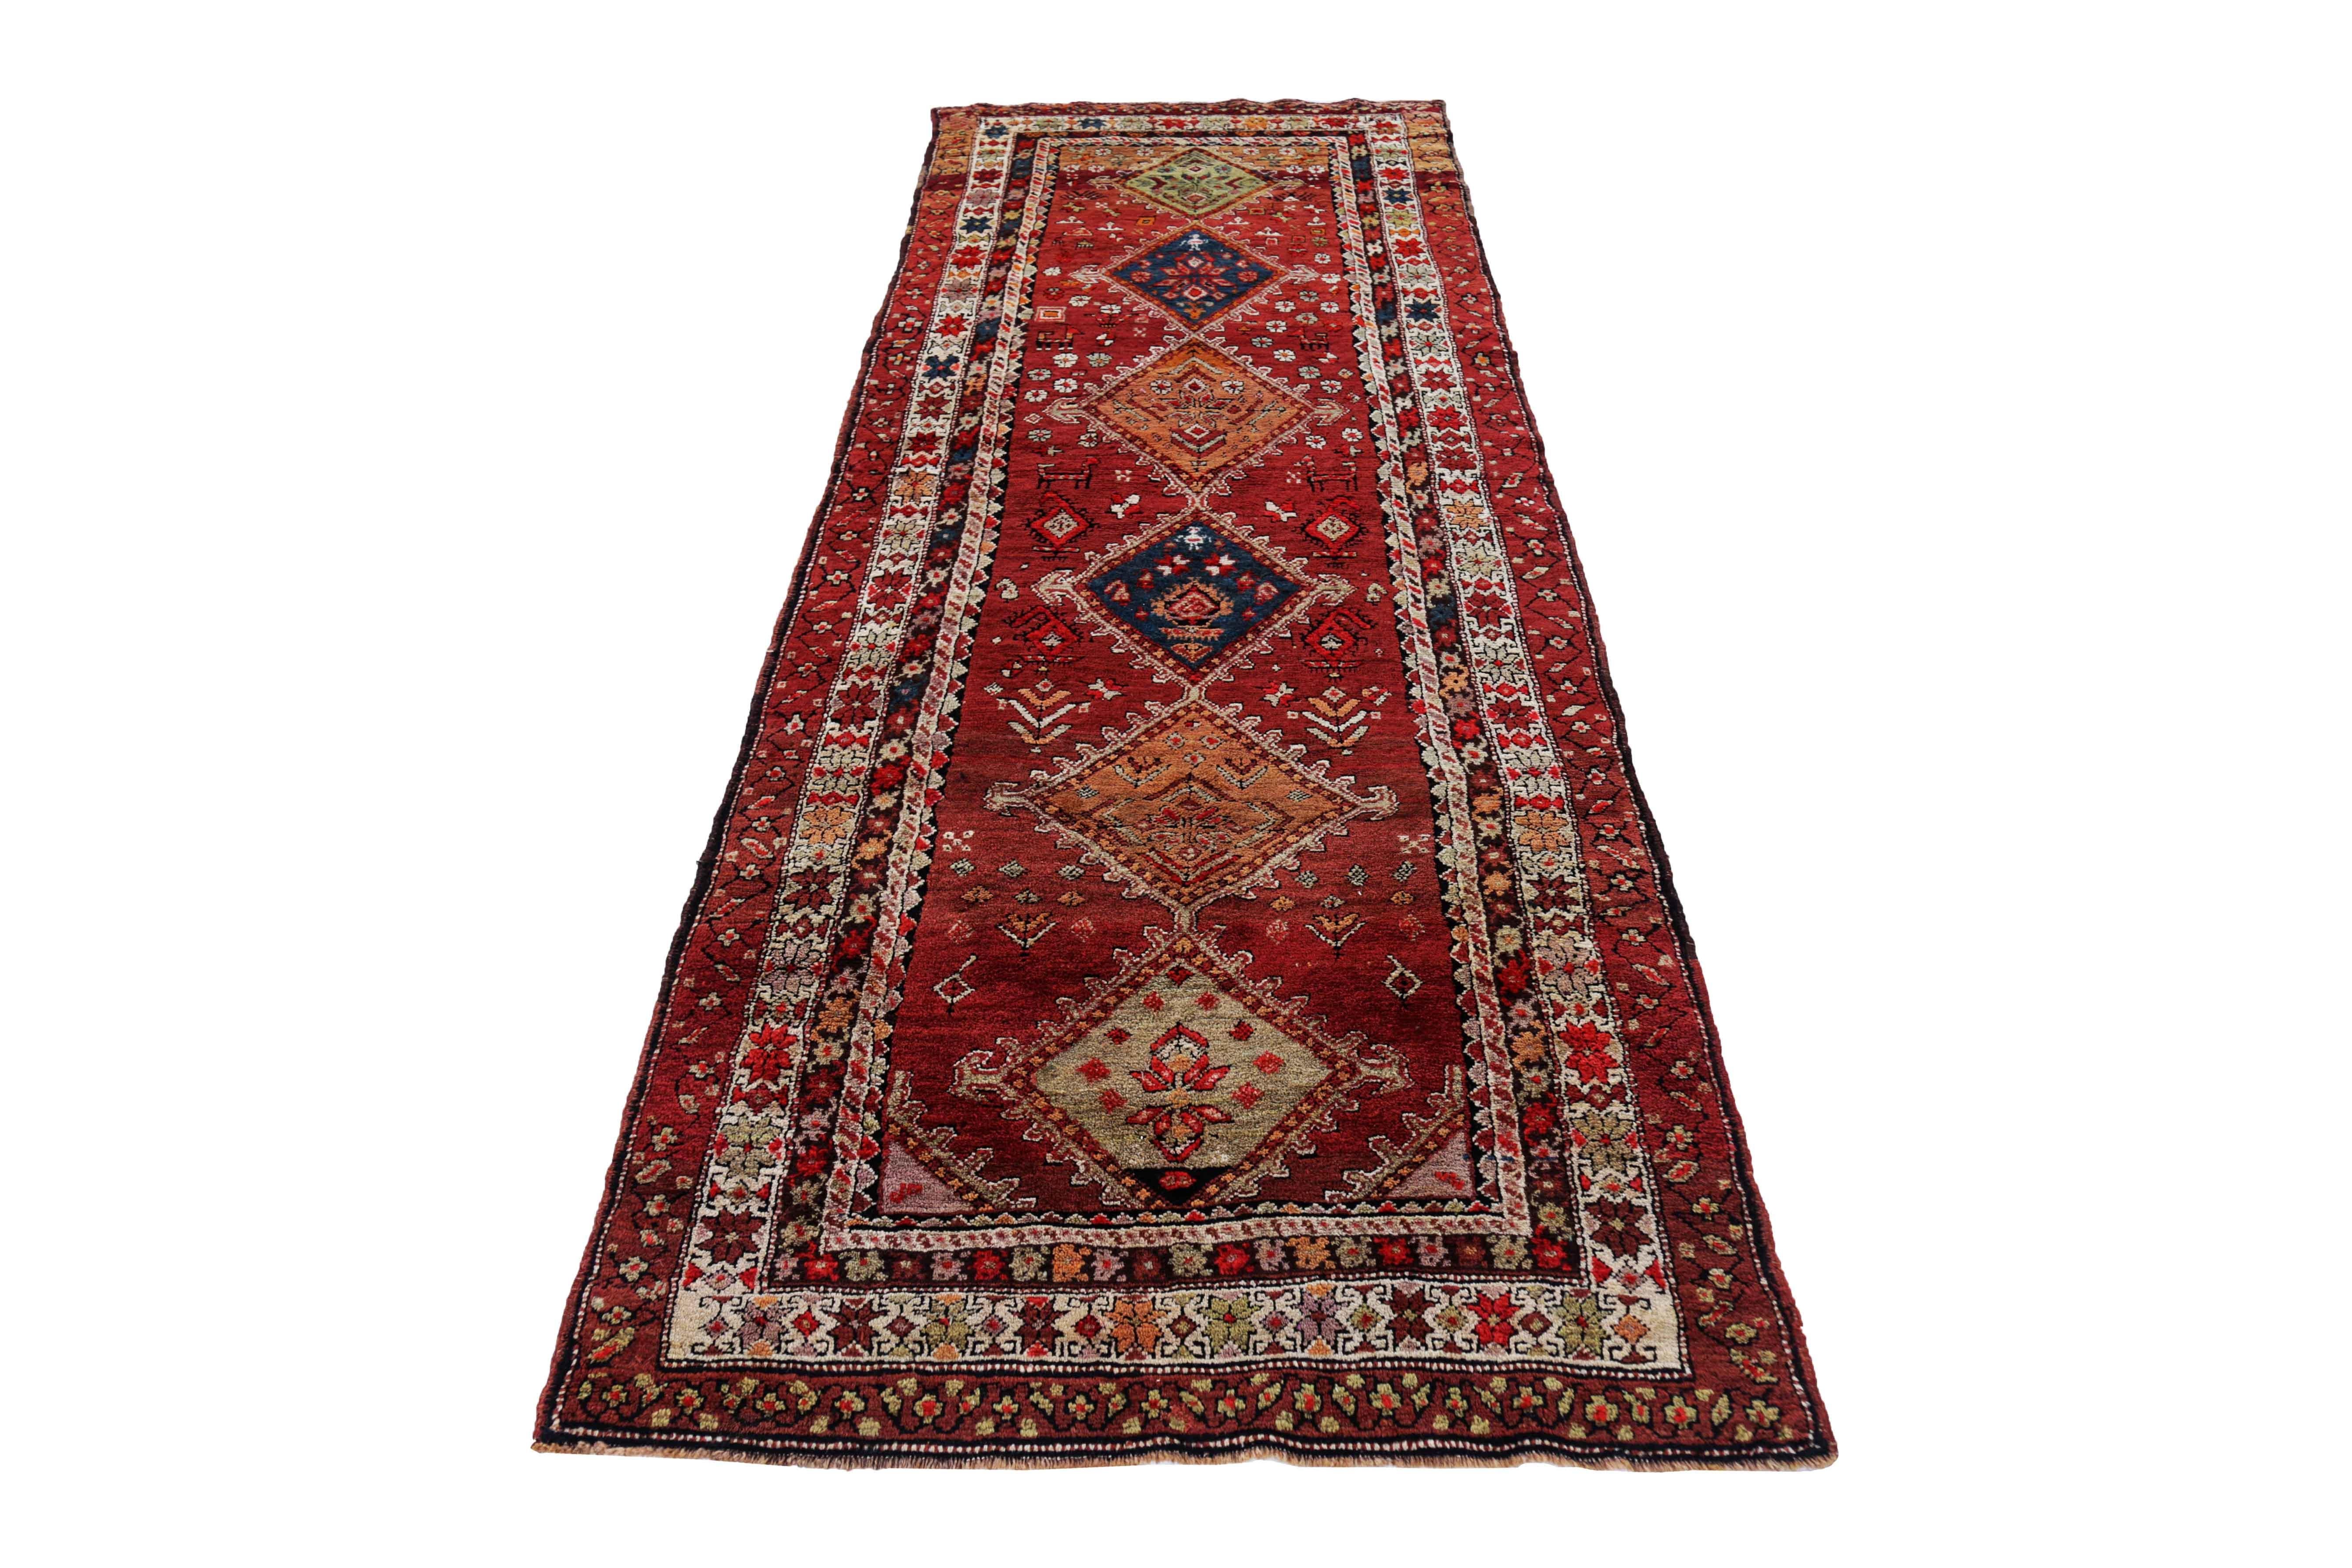 Antiker persischer Teppich, handgewebt aus feinster Schafswolle. Es ist mit natürlichen pflanzlichen Farbstoffen gefärbt, die für Menschen und Haustiere sicher sind. Es ist ein traditionelles kasachisches Design, das von erfahrenen Kunsthandwerkern